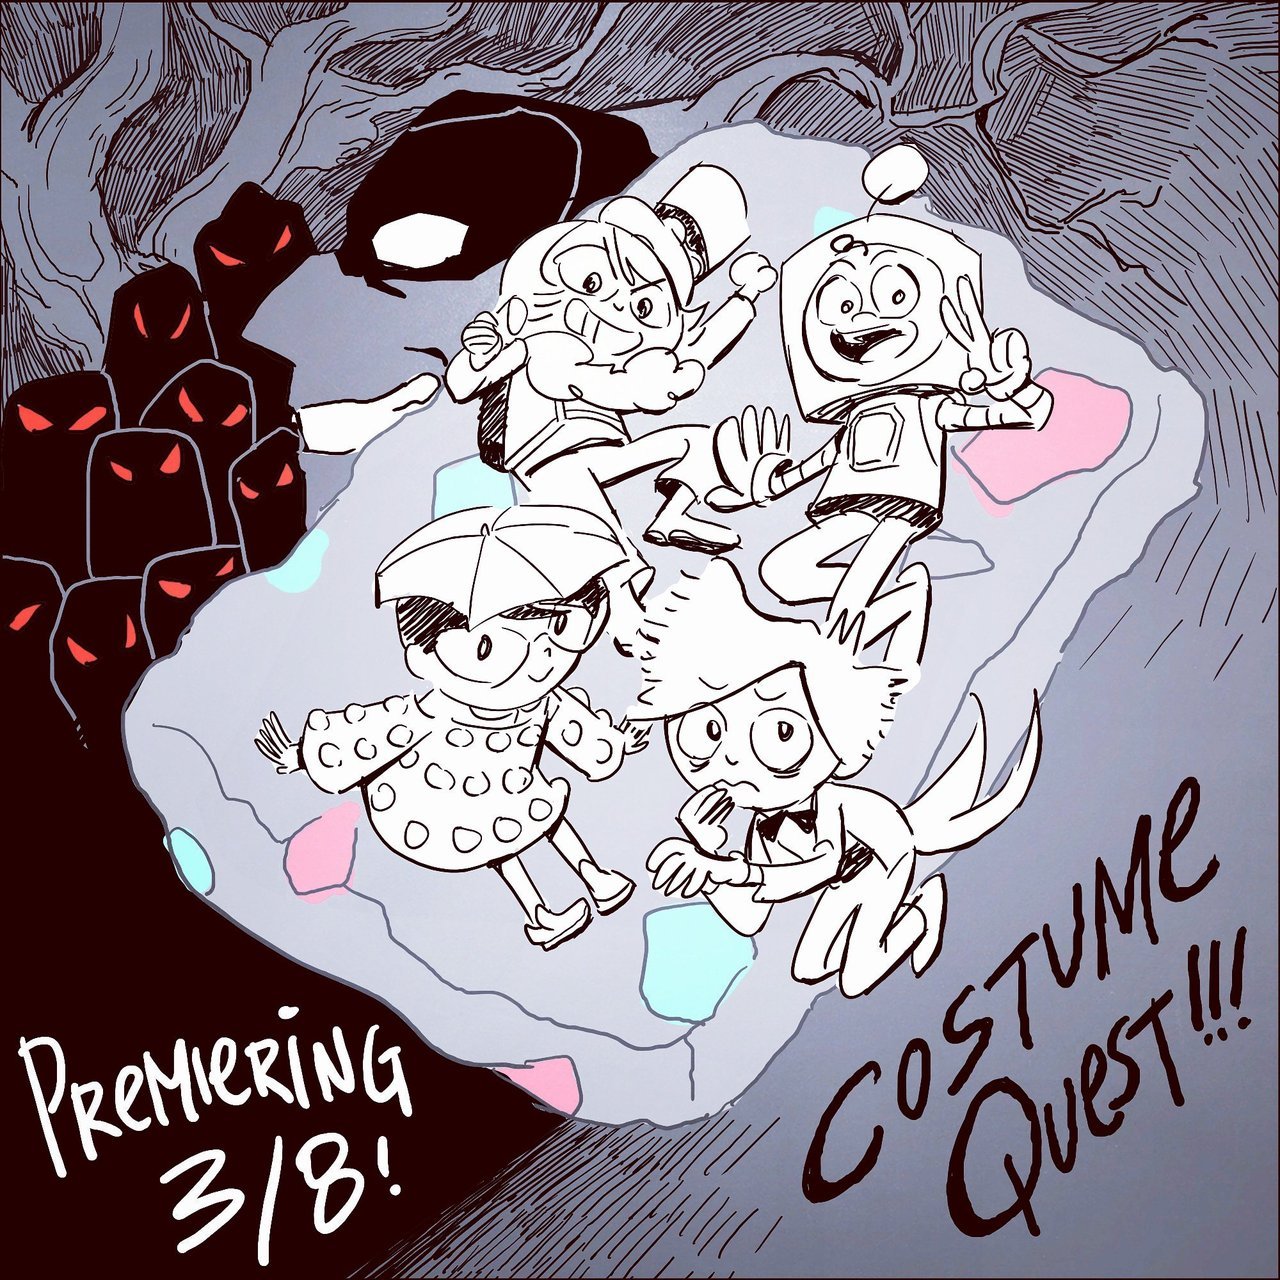 Costume Quest promo art by show storyboard artist Yujin Lee. Thank you, Yujin!